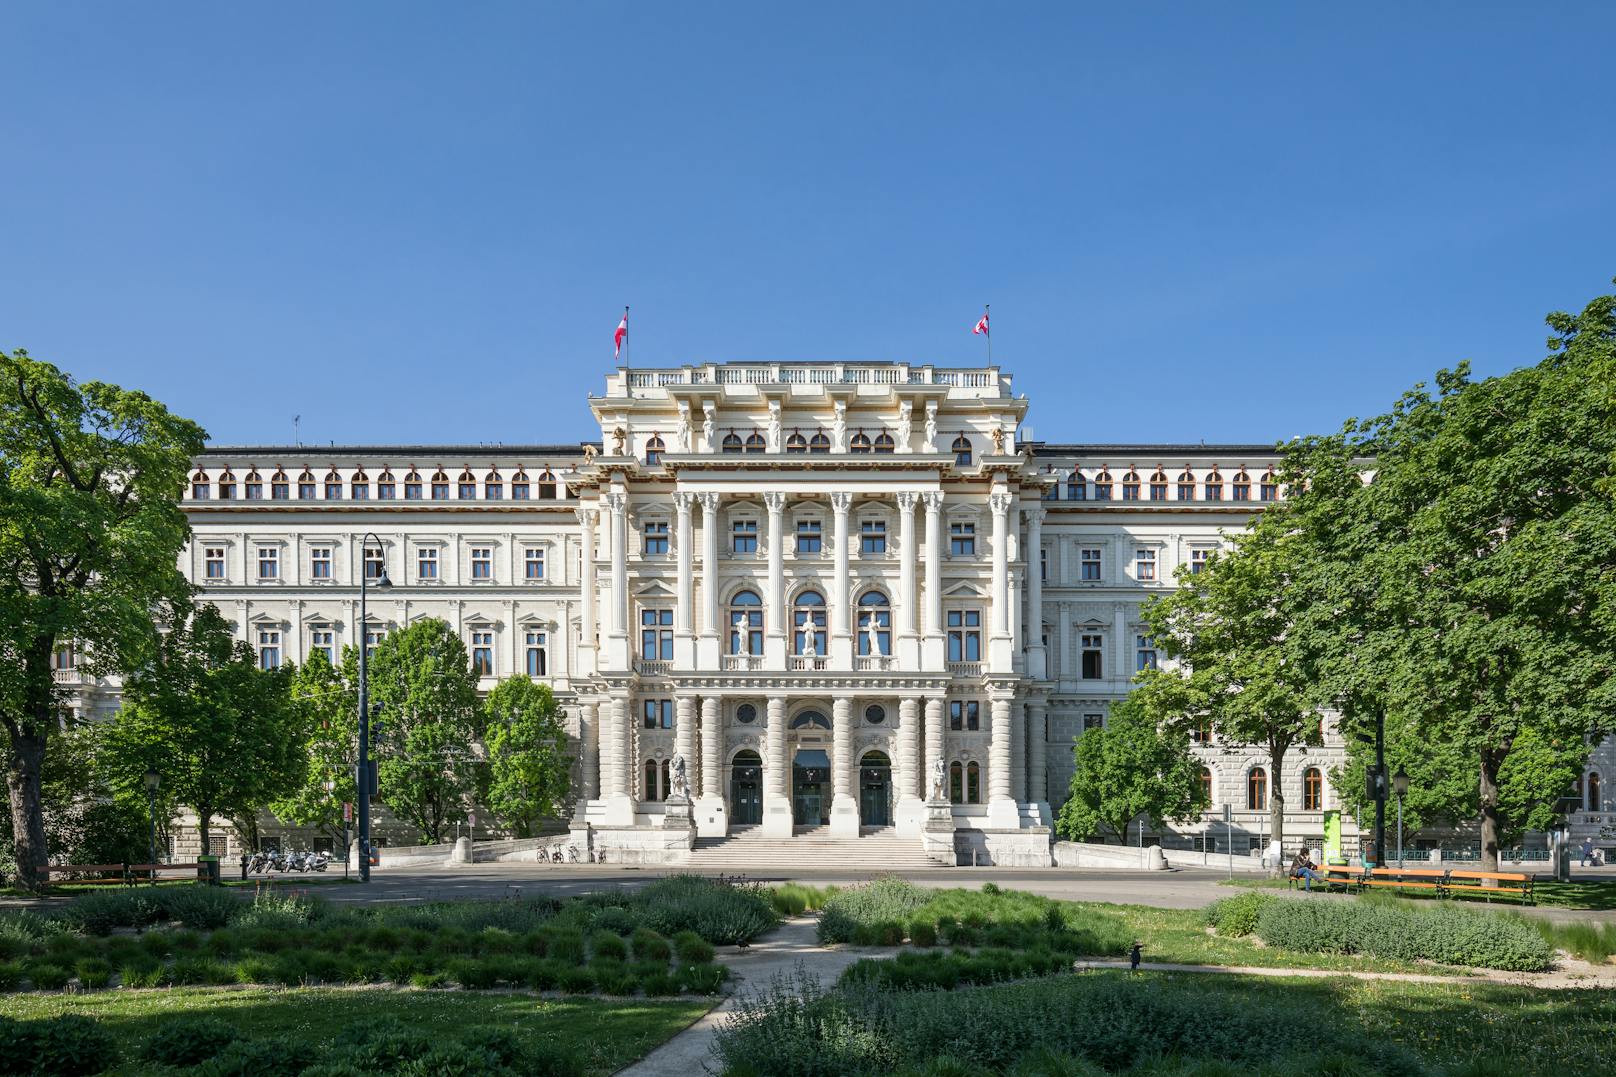 Justizpalast am Schmerlingplatz: Oberlandesgericht und Oberster Gerichtshof in Wien.